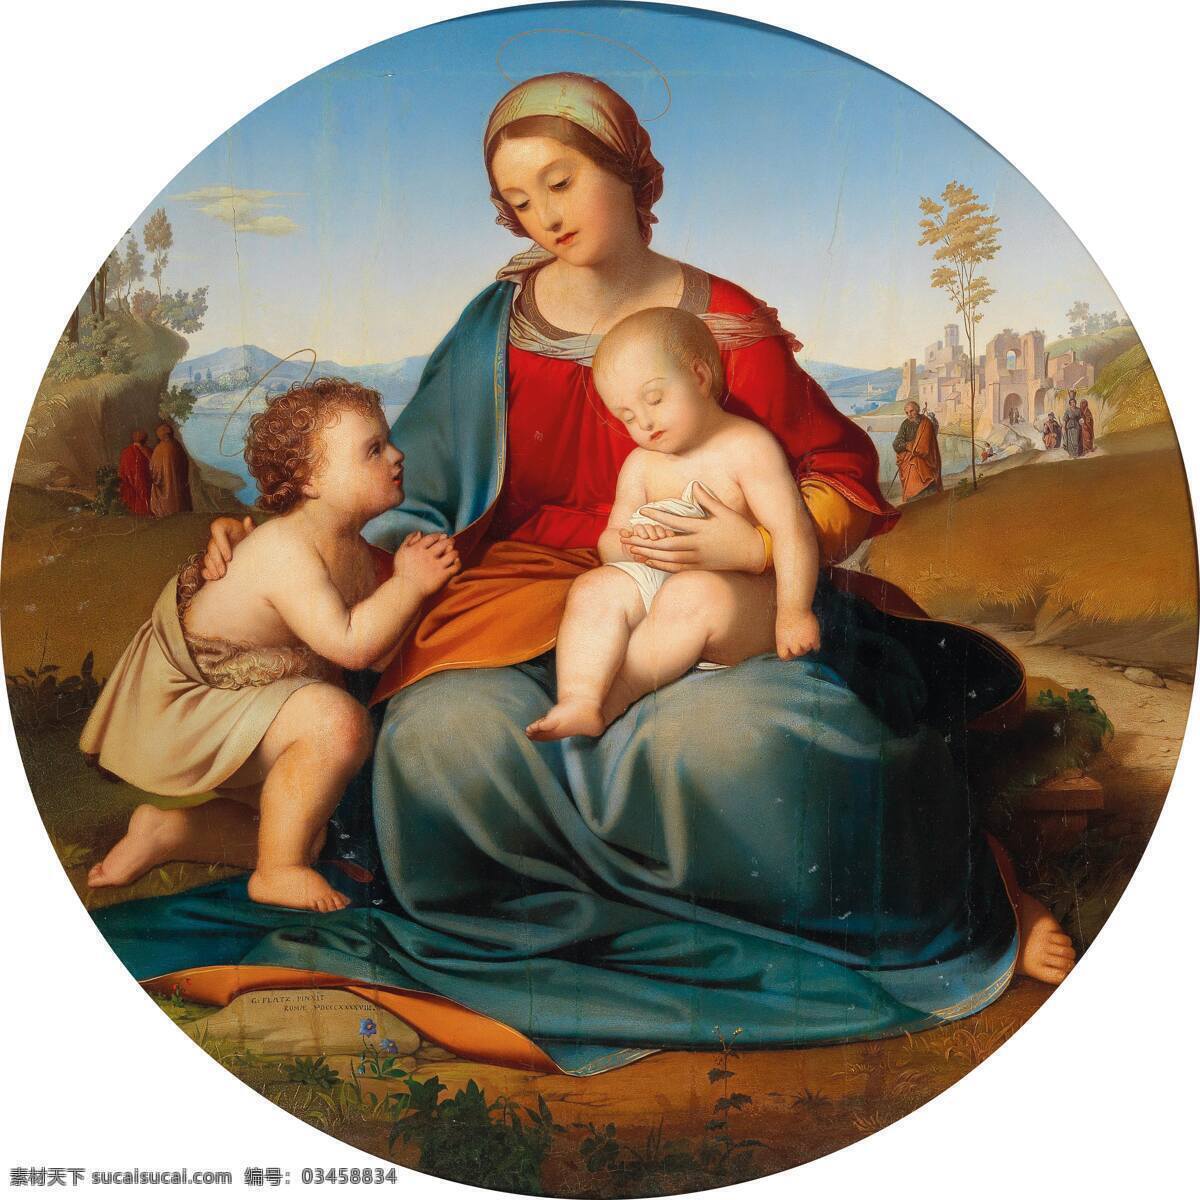 吉哈德183 格拉茨作品 德国画家 圣母玛丽娅 圣婴耶稣 圣徙朝拜 宗教油画 19世纪油画 油画 文化艺术 绘画书法